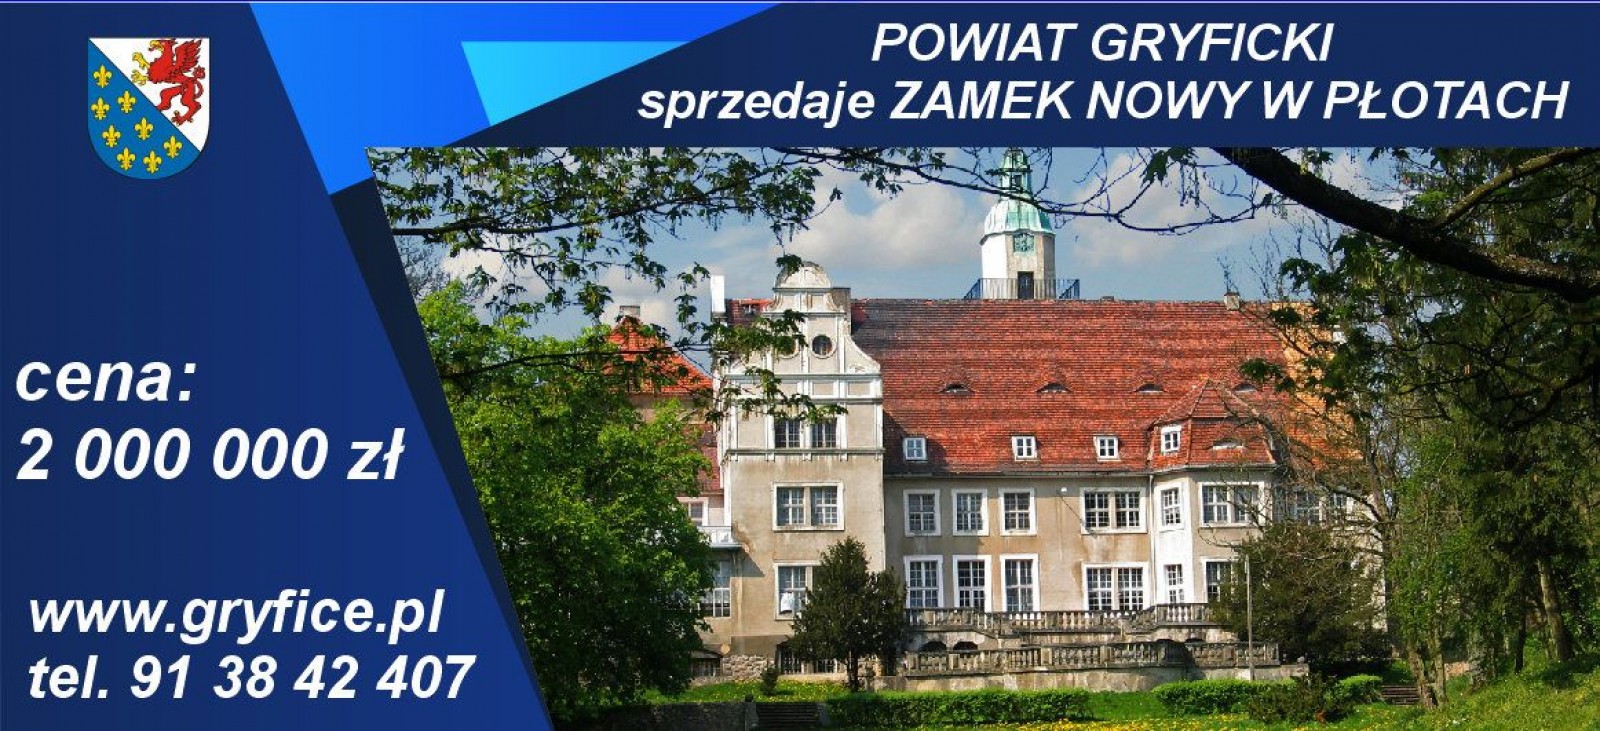 Ogłoszenie o sprzedaży nieruchomości położonej w Płotach stanowiącej własność powiatu Gryfickiego